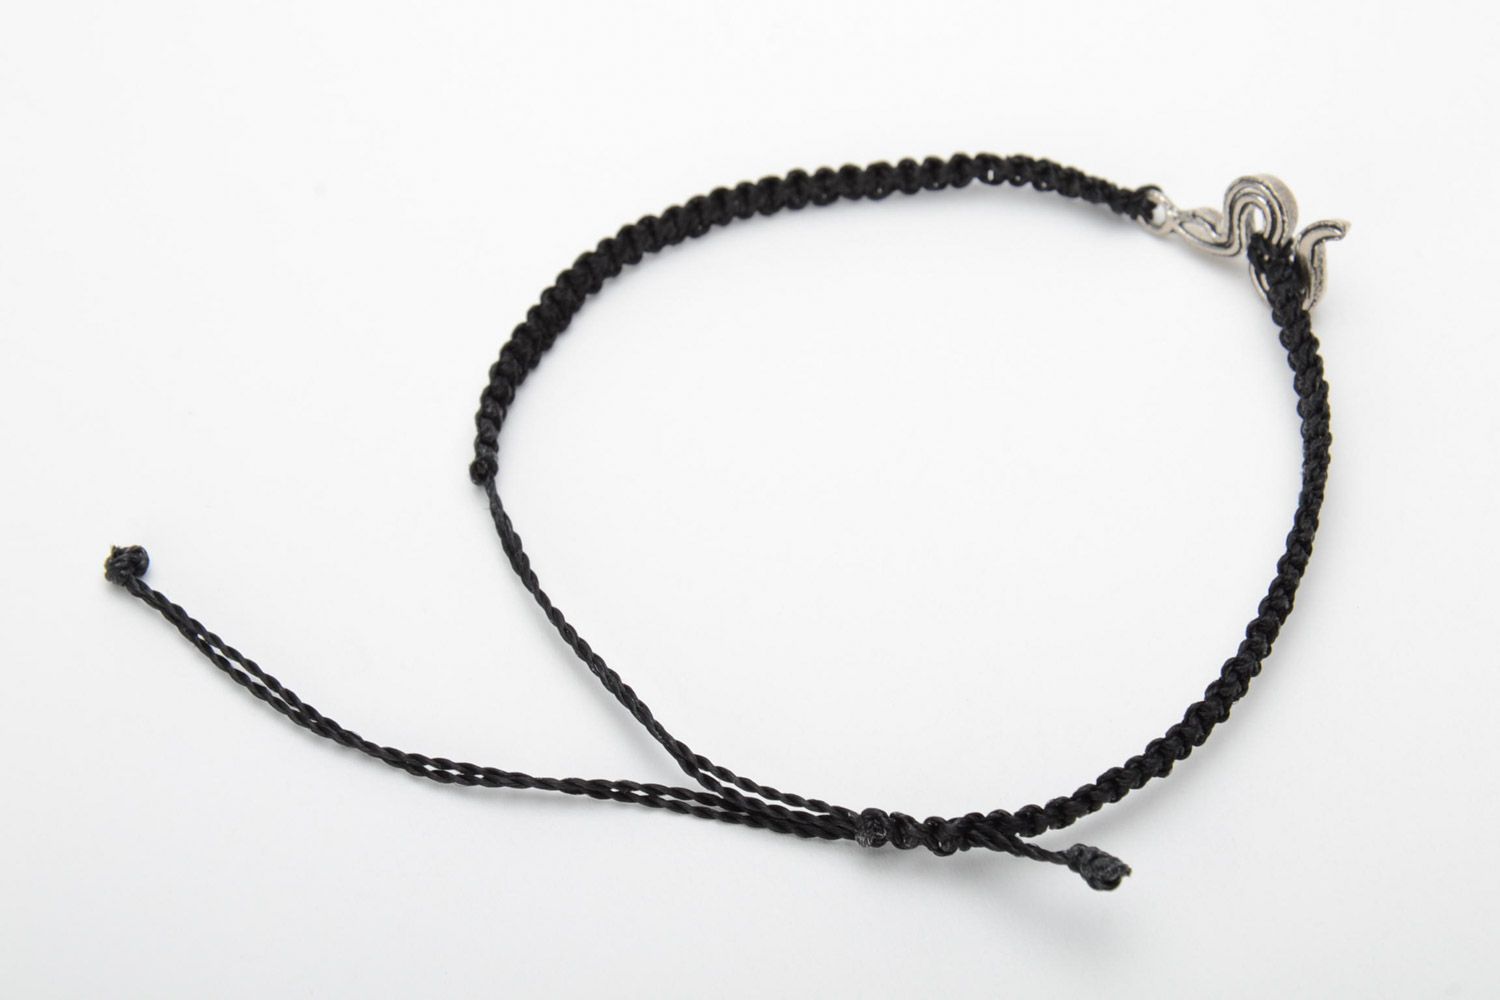 Handmade black macrame woven bracelet with metal snake charm for women photo 4